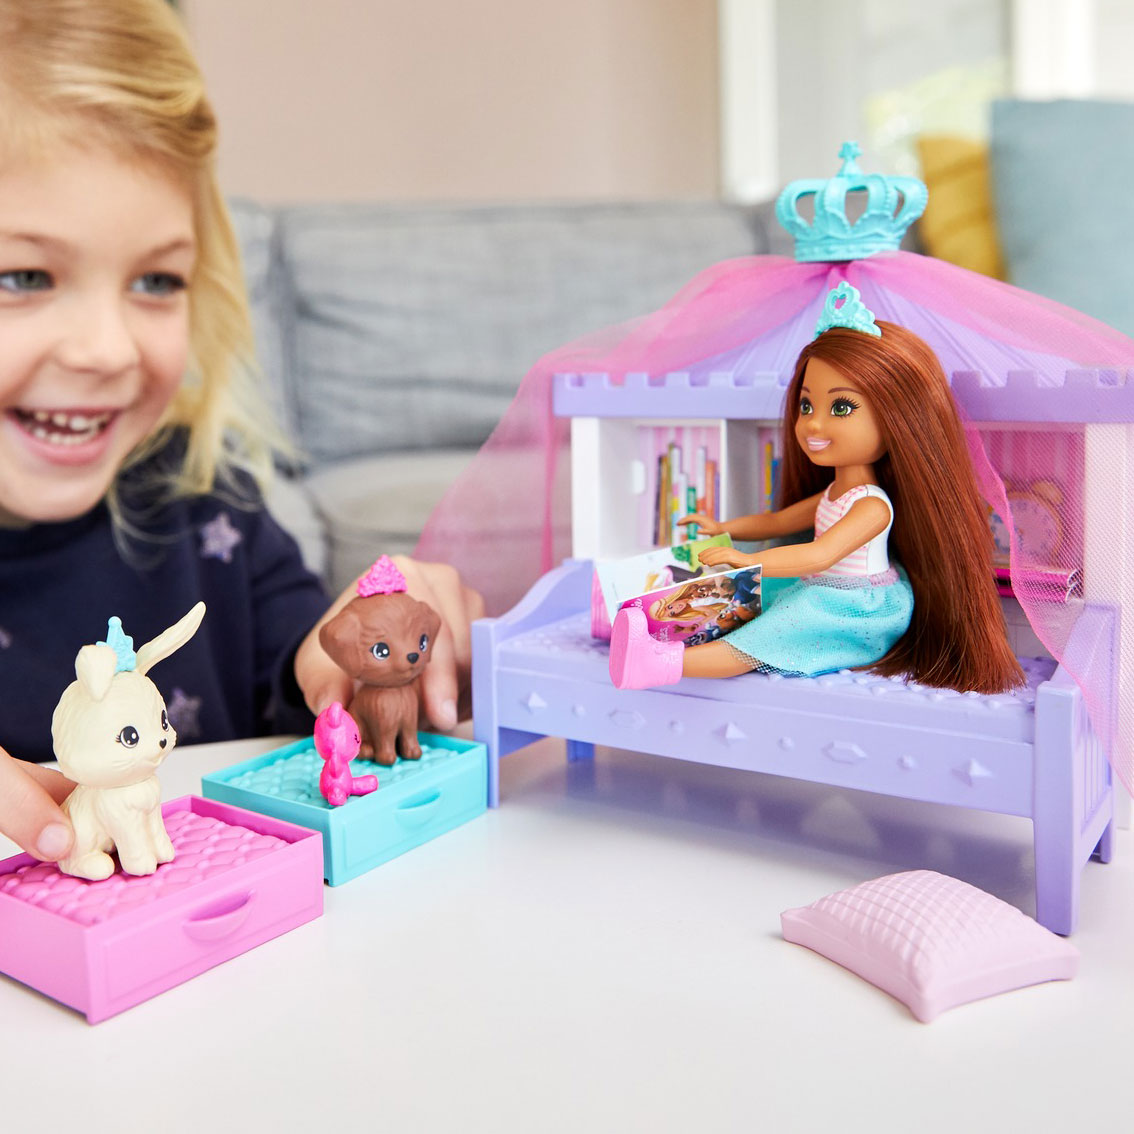 Barbie Adventure - Chelsea Friend Bedtime play set | Thimble Toys